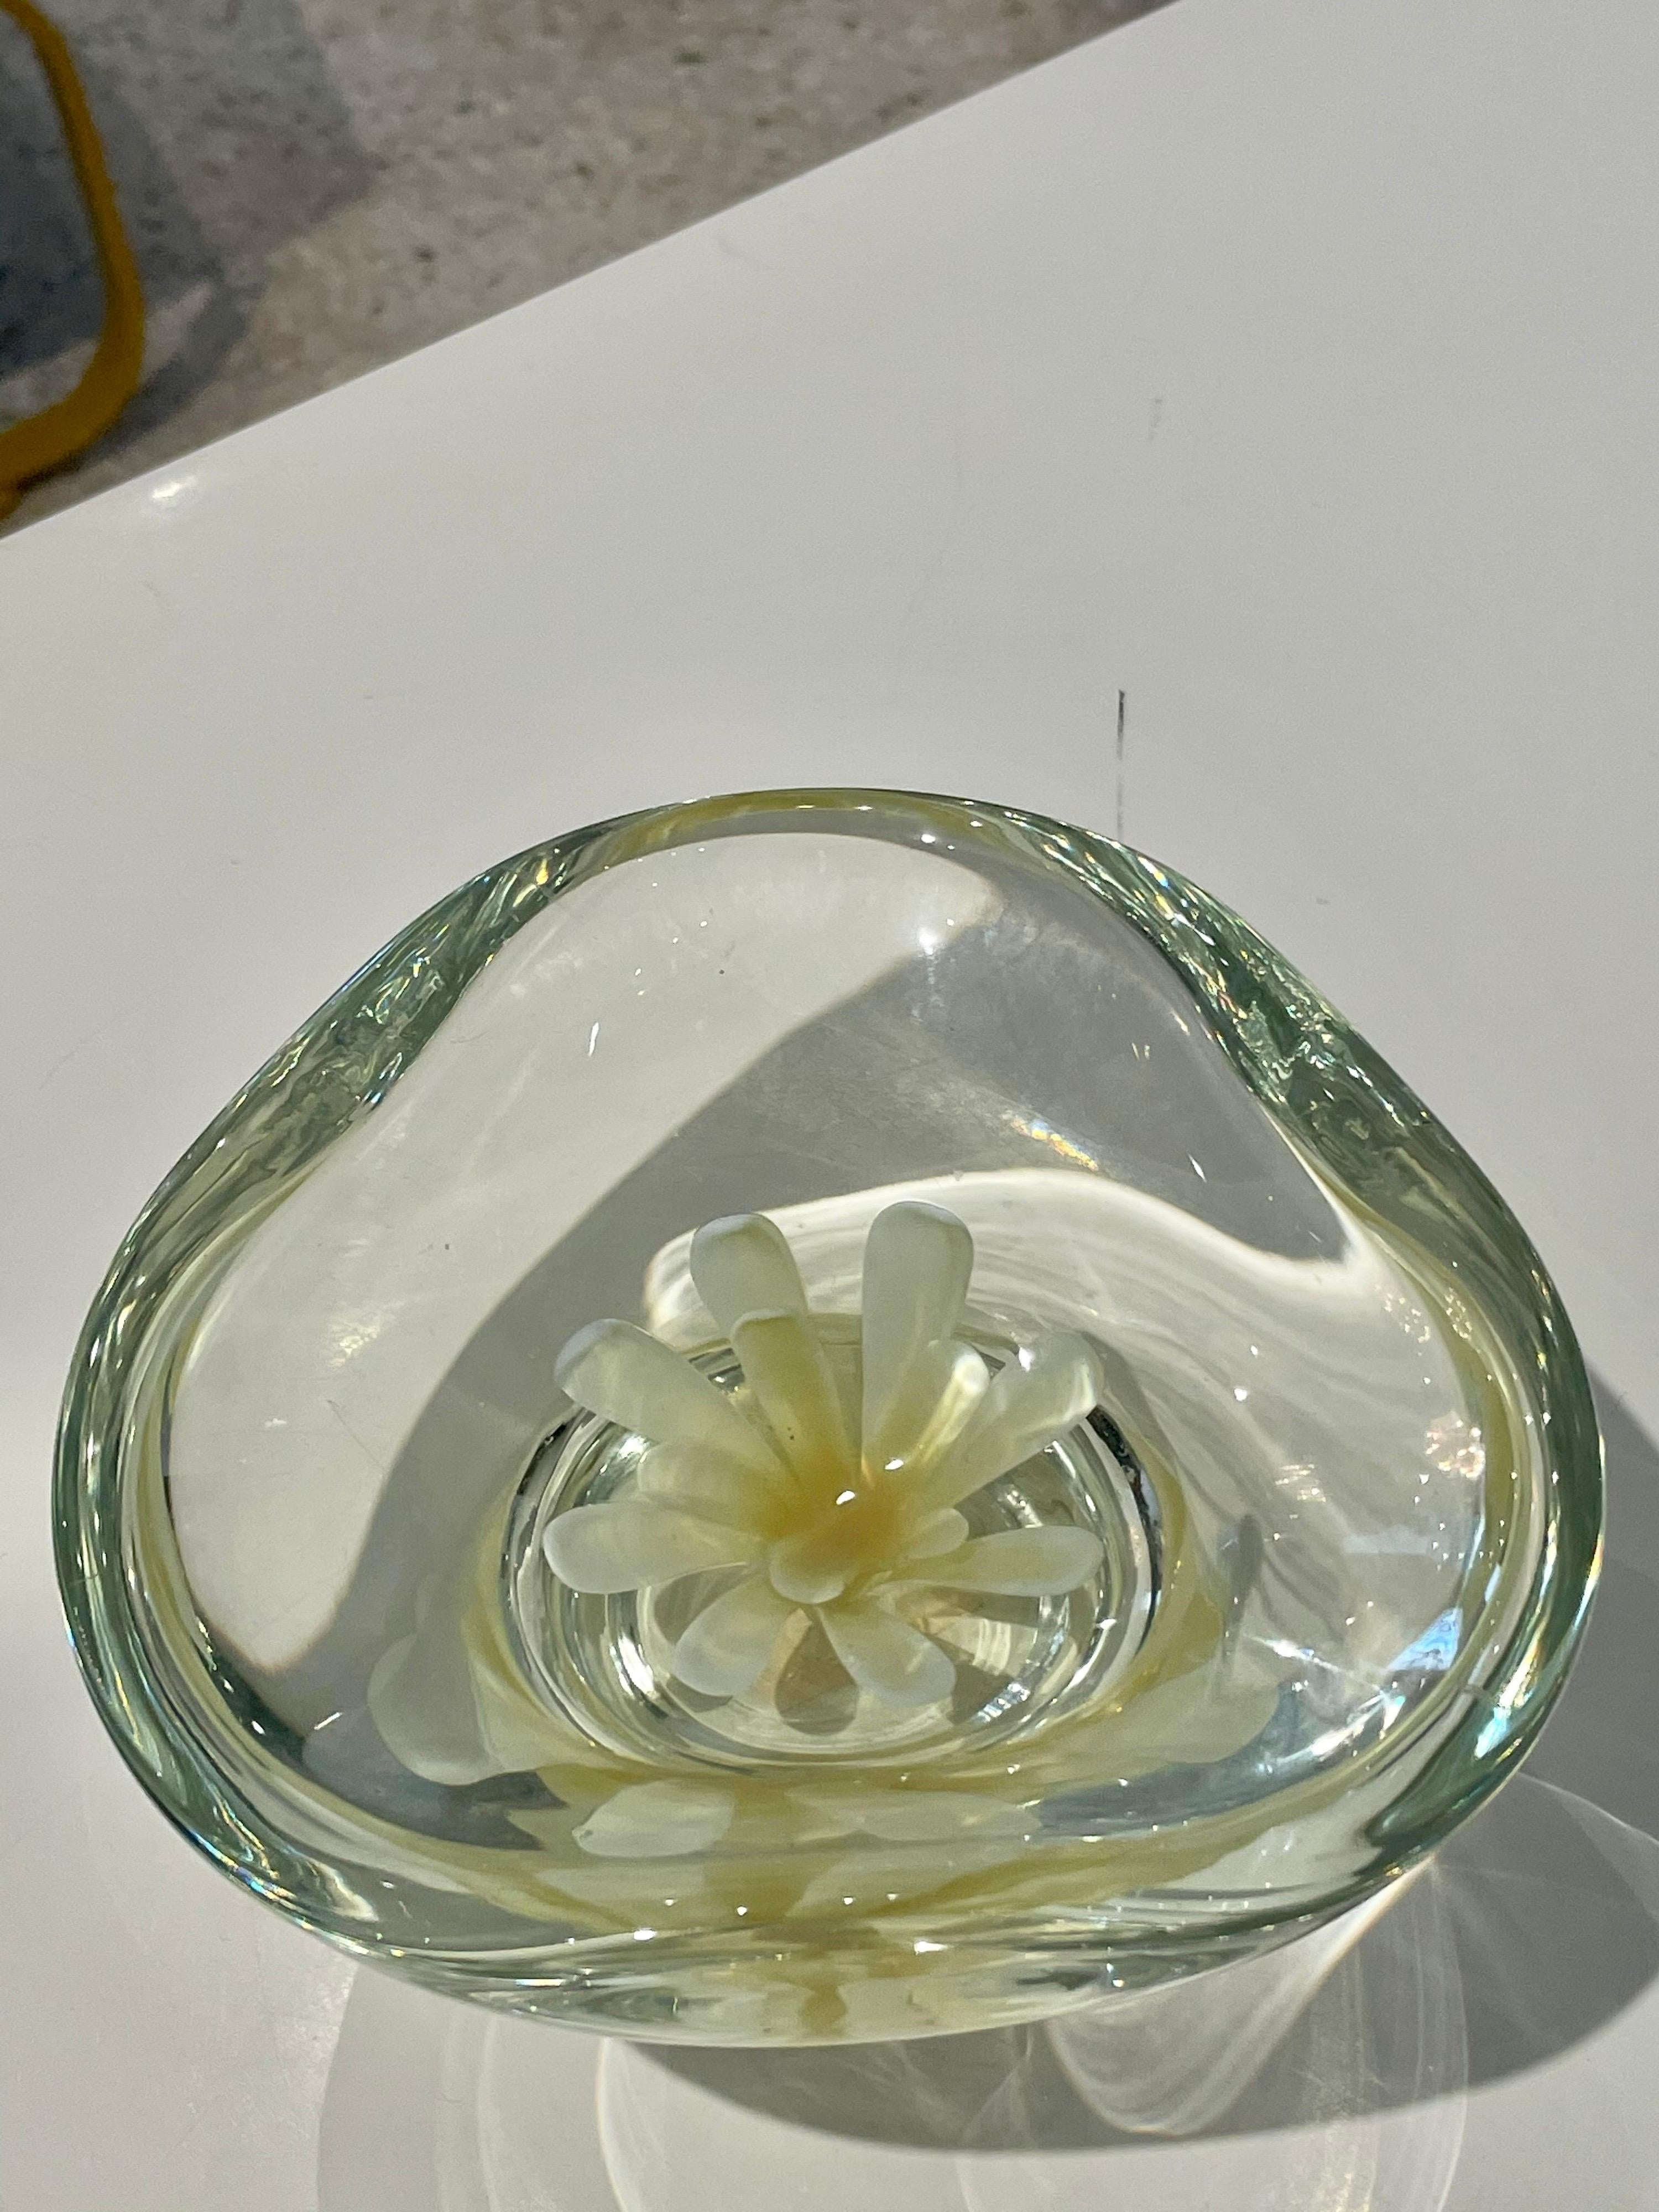 Ce merveilleux petit trésor présente une fleur flottante au centre de ce bol, le vide-poche. Cette pièce vintage en verre de Murano est d'un doux jaune canari - très spécial et estival.